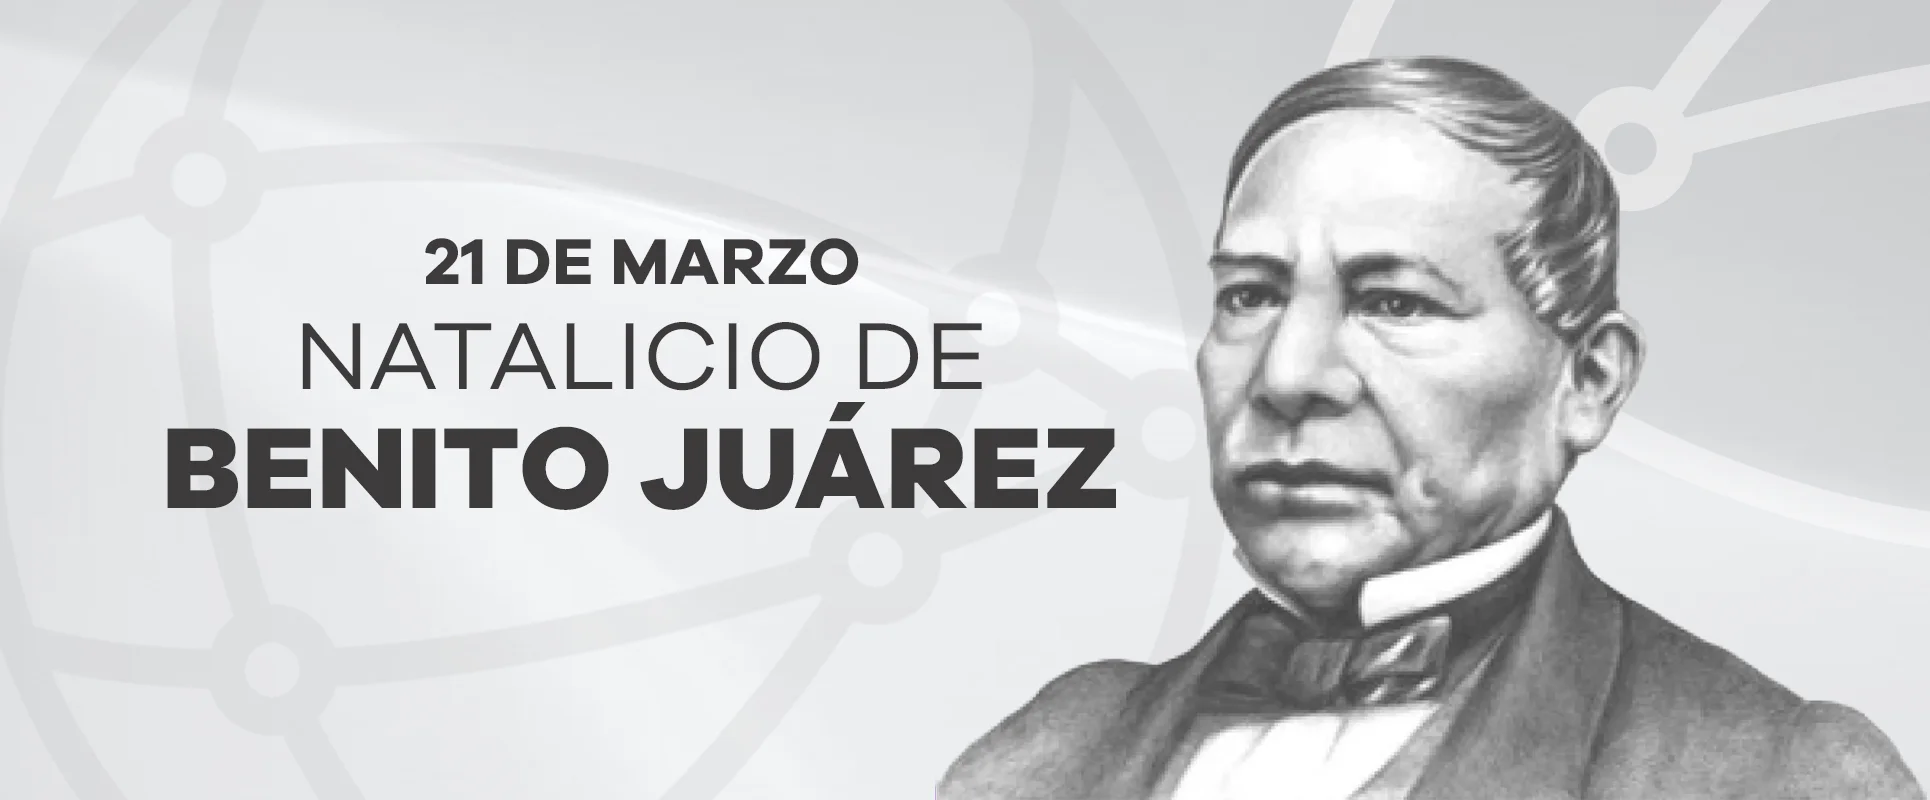 21 de marzo Nacimiento de Benito Juárez